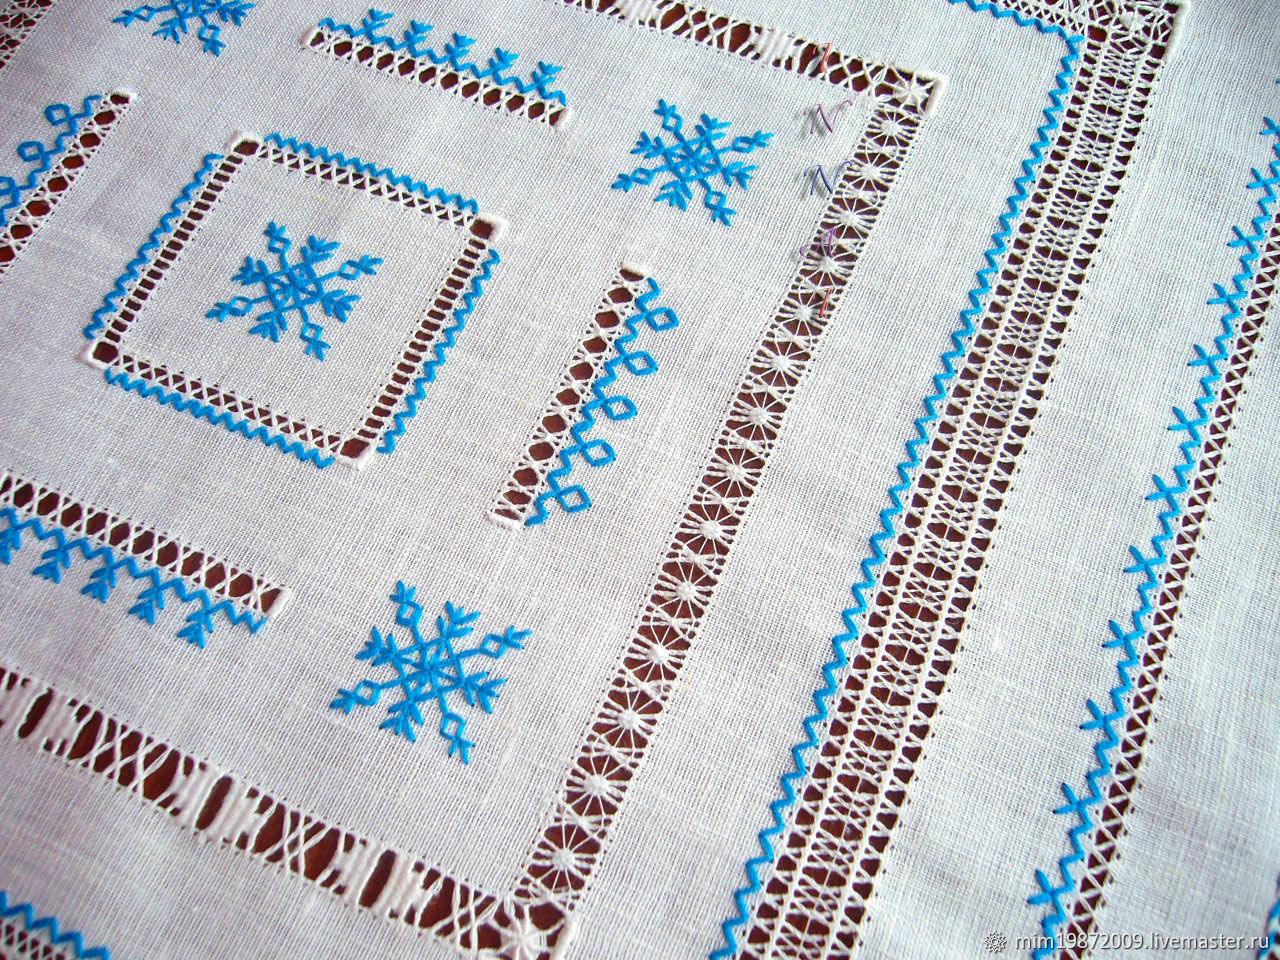 Napkin 5 Snowflakes Linen Blue Hand Stitch Embroidery Earrings, Swipe, Krasnodar,  Фото №1